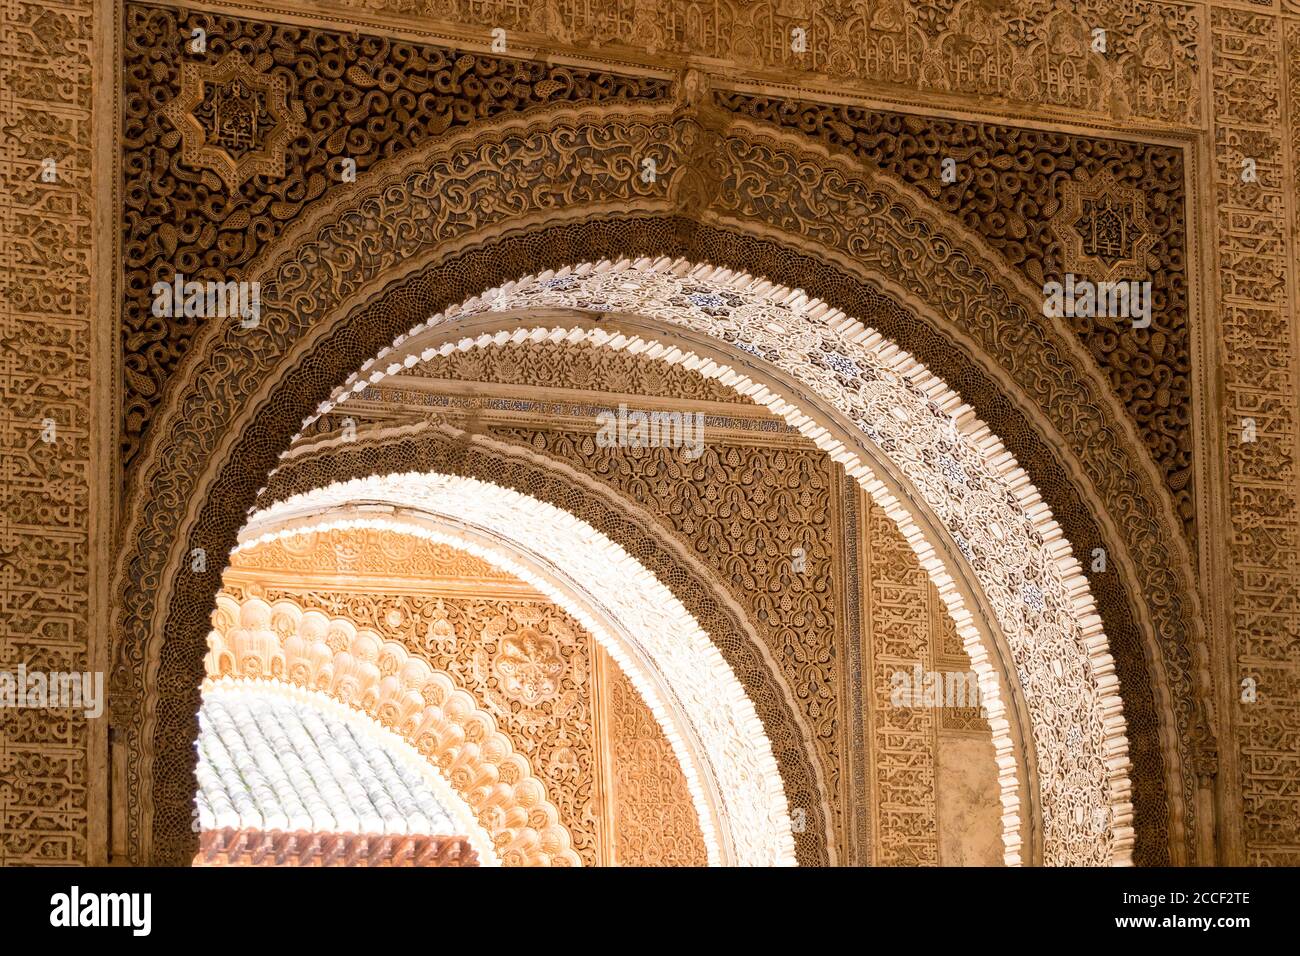 Spain, Granada, Alhambra, Palacios Nazaries, Patio de los Leones, Löwenhof, ornate arches, Arabic epigraphy Stock Photo